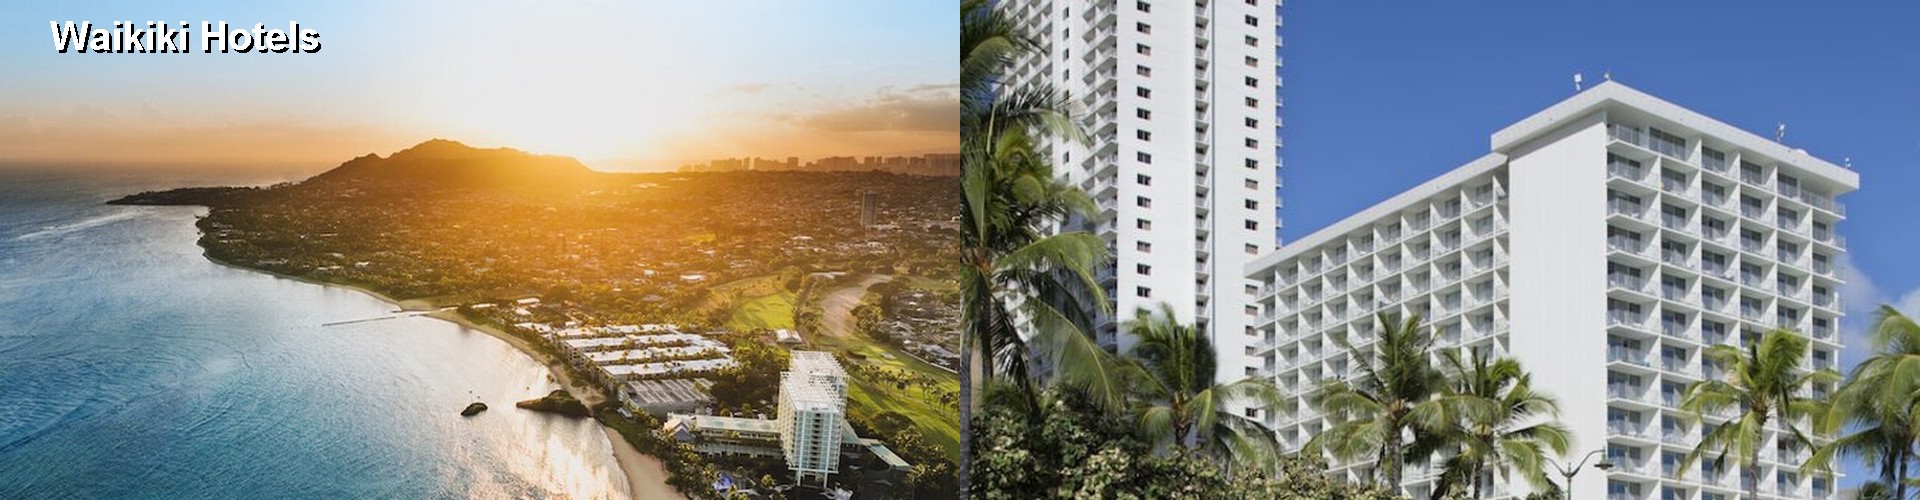 5 Best Hotels near Waikiki